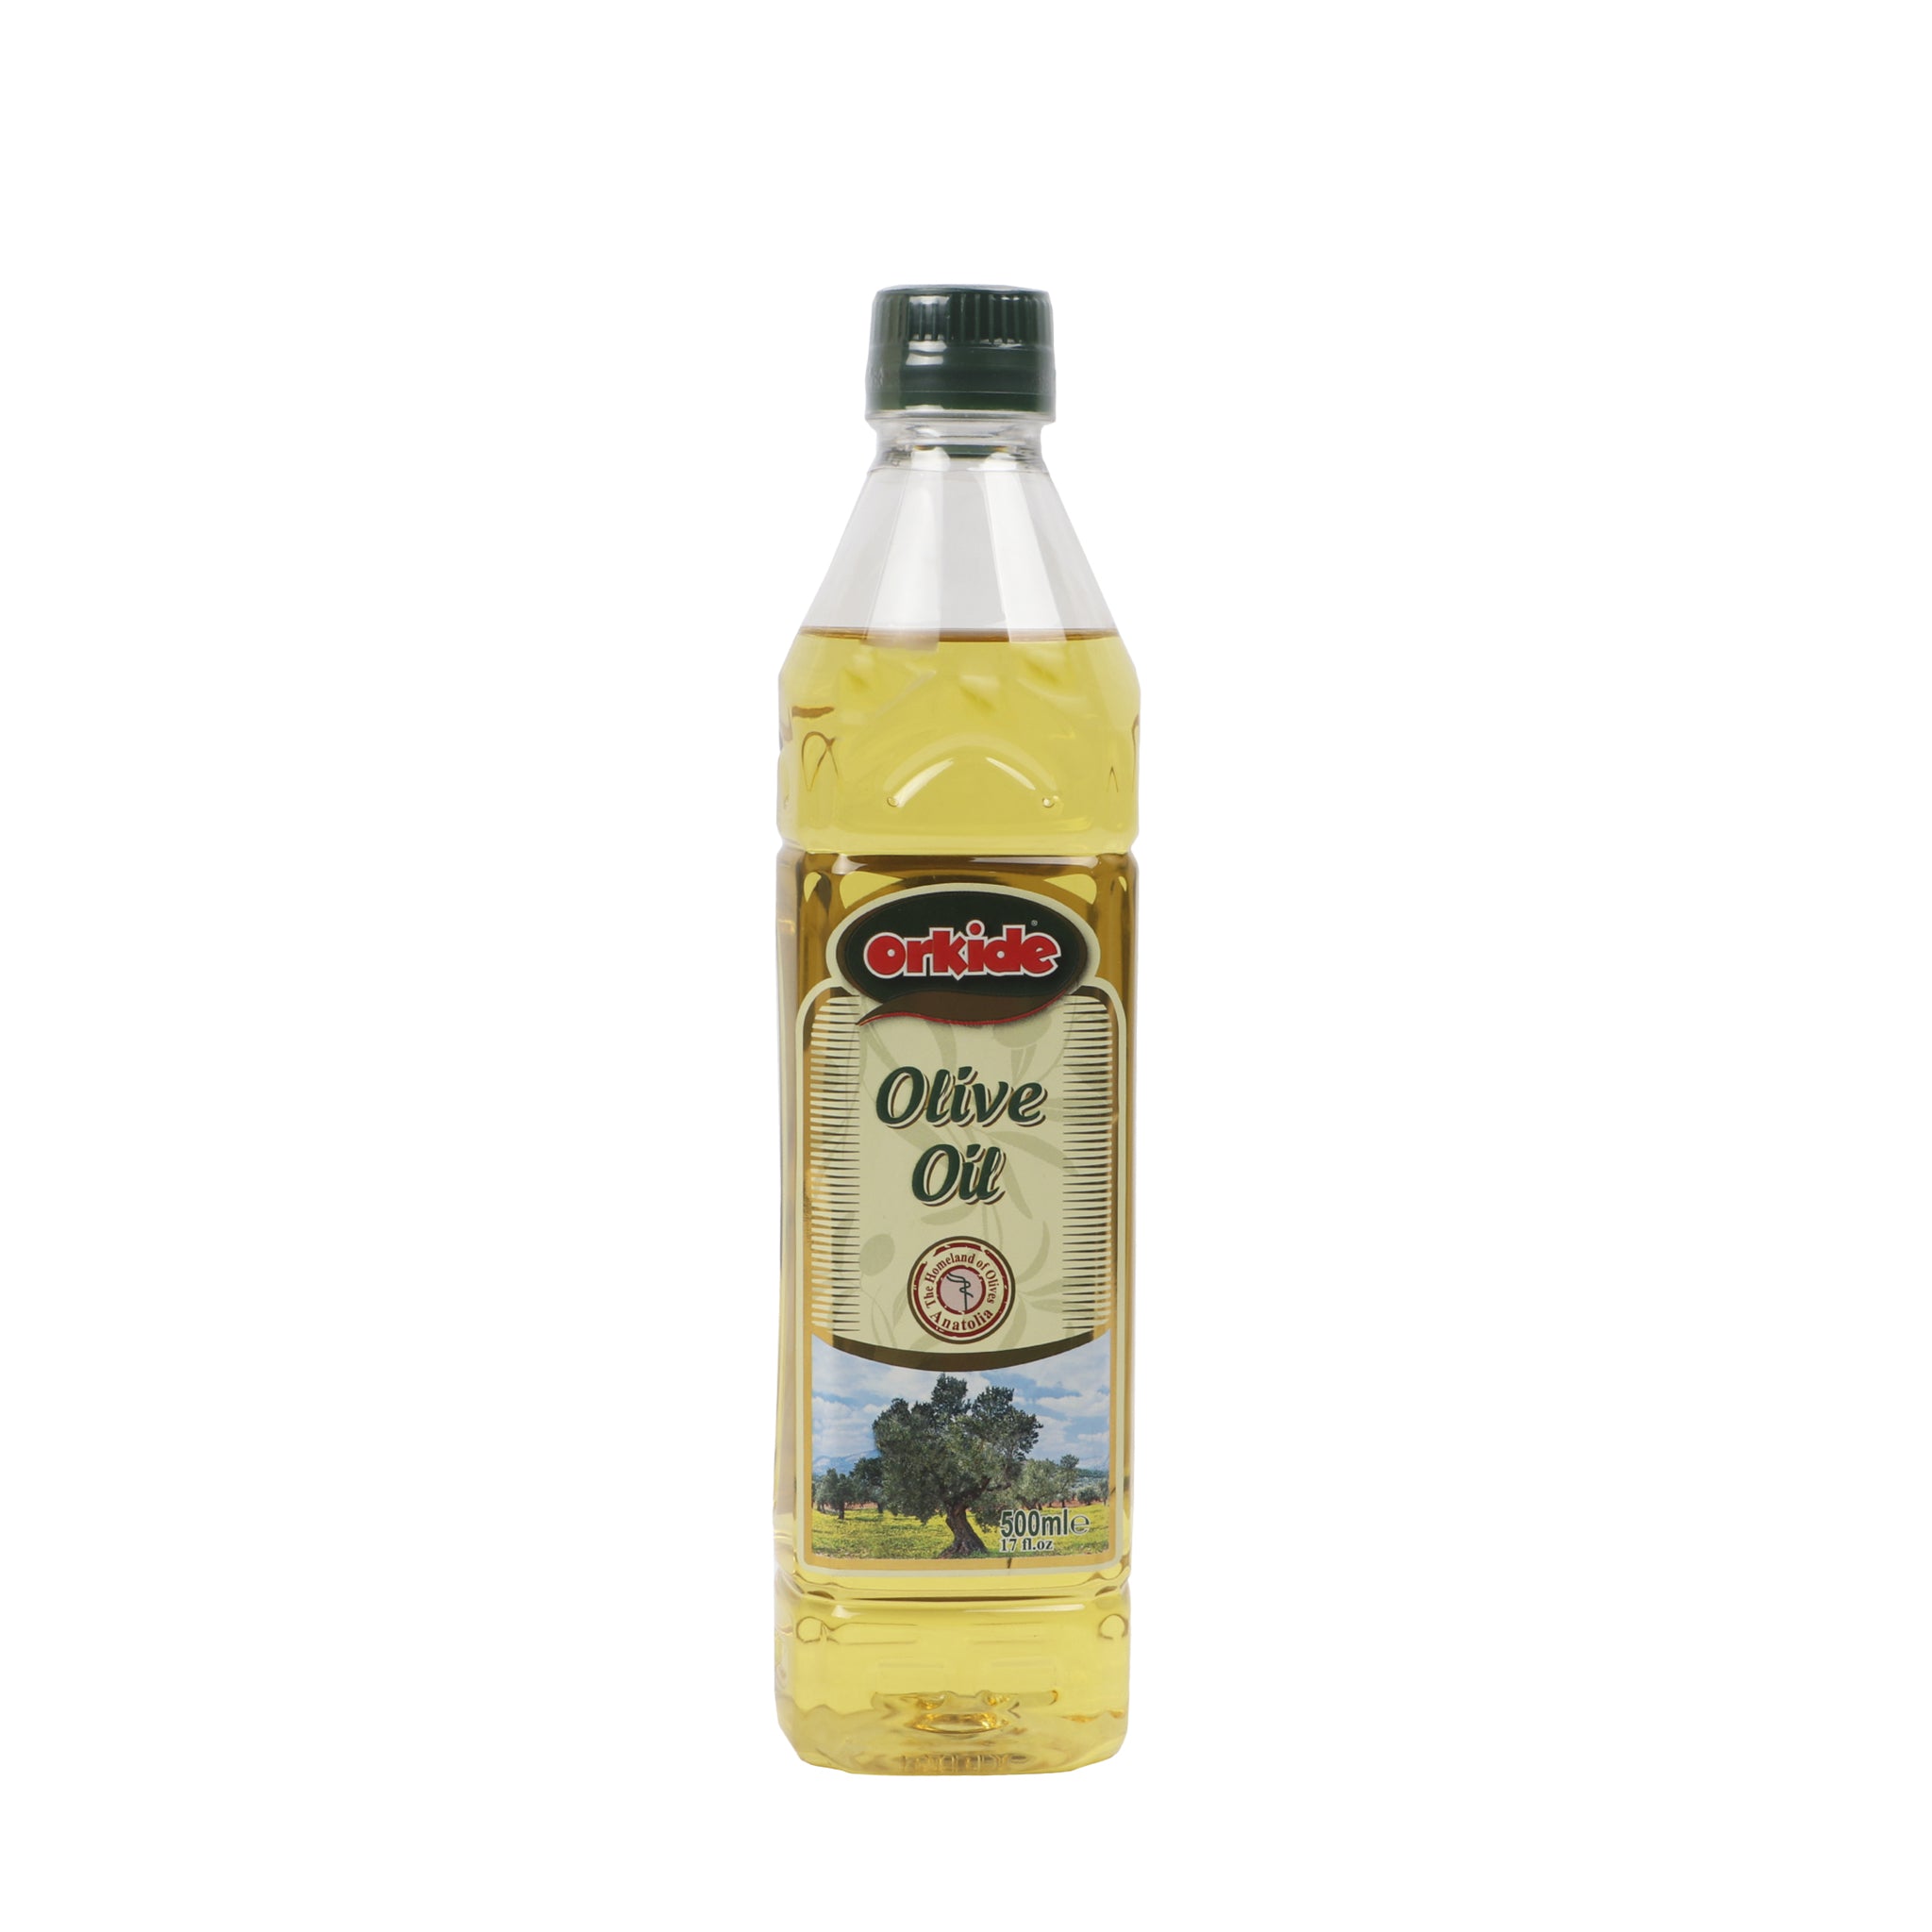 Orkide Olive Oil 500Ml